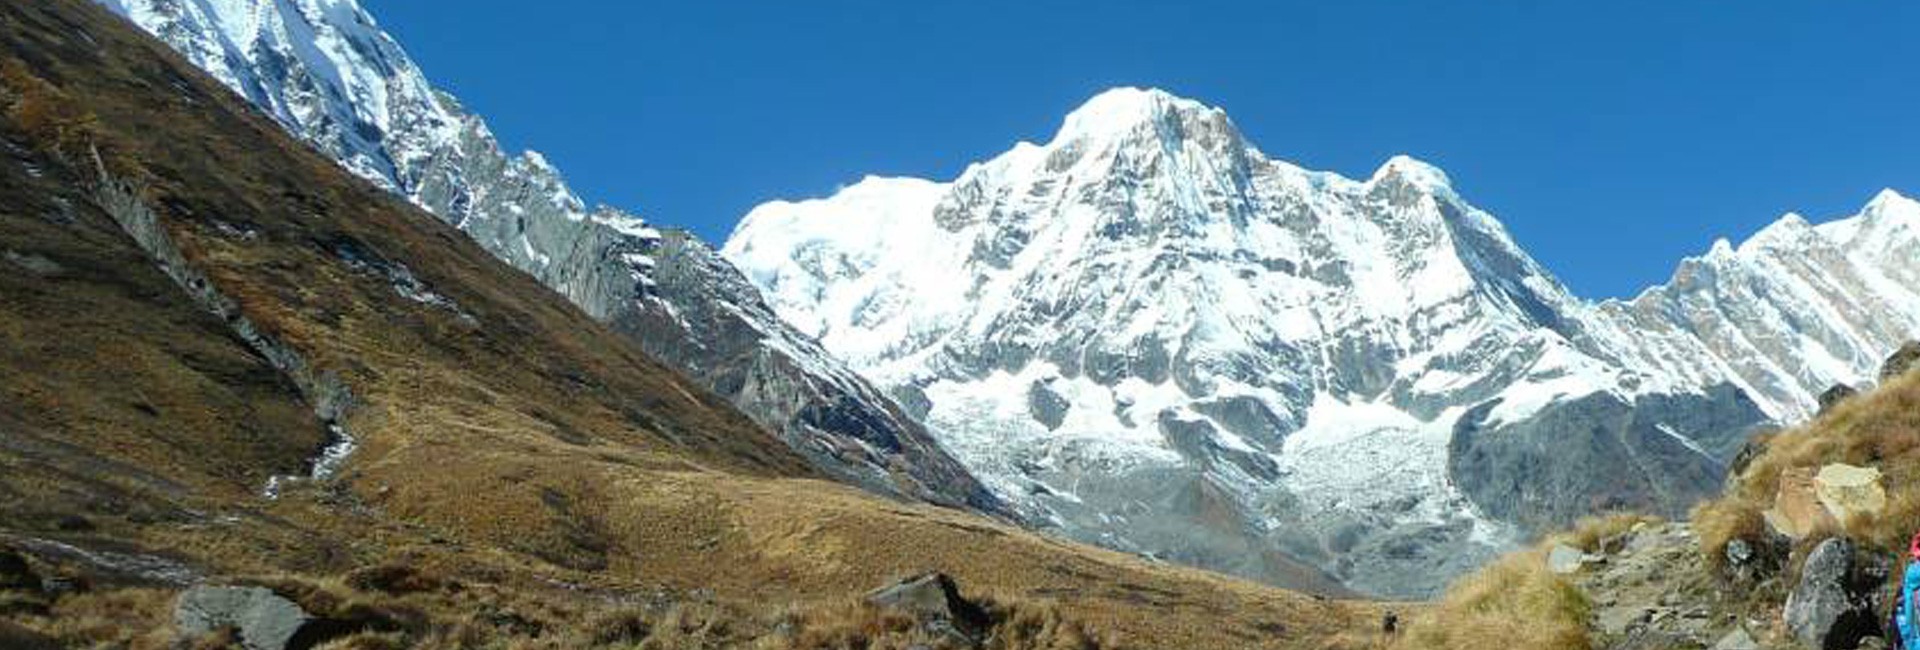 Annapurna Sanctuary Trek - 15 Days